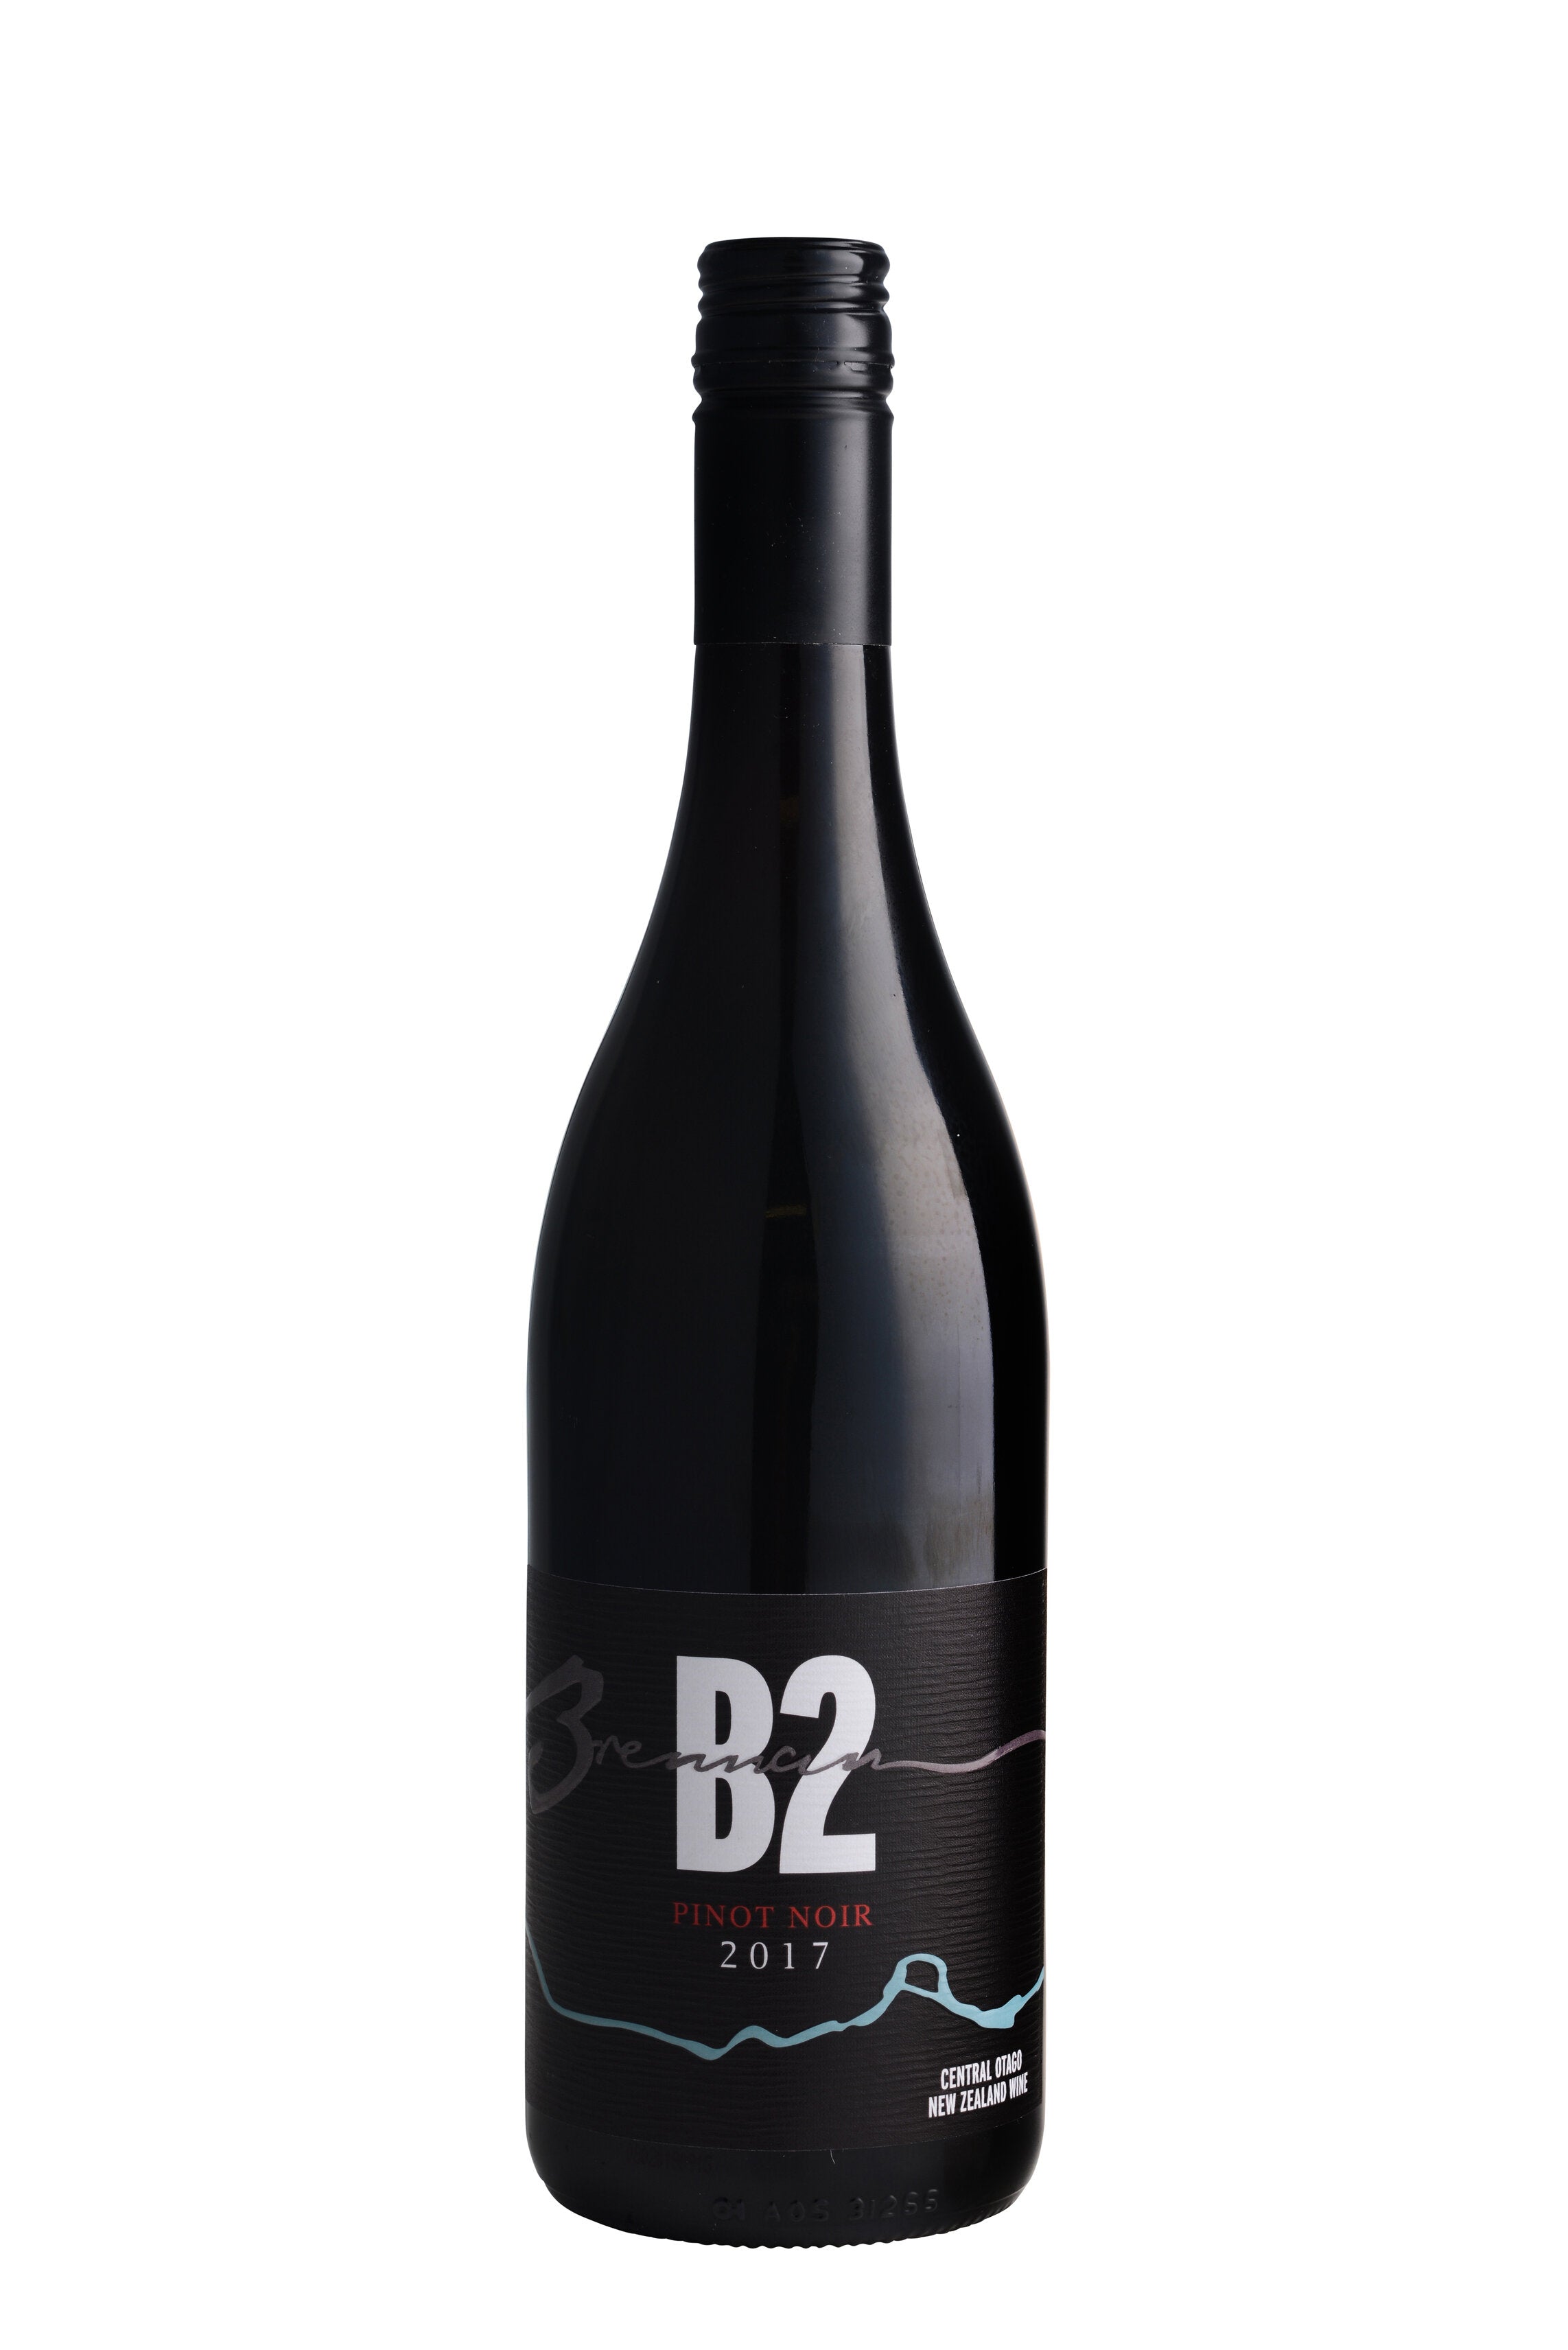 2017 B2 Pinot Noir